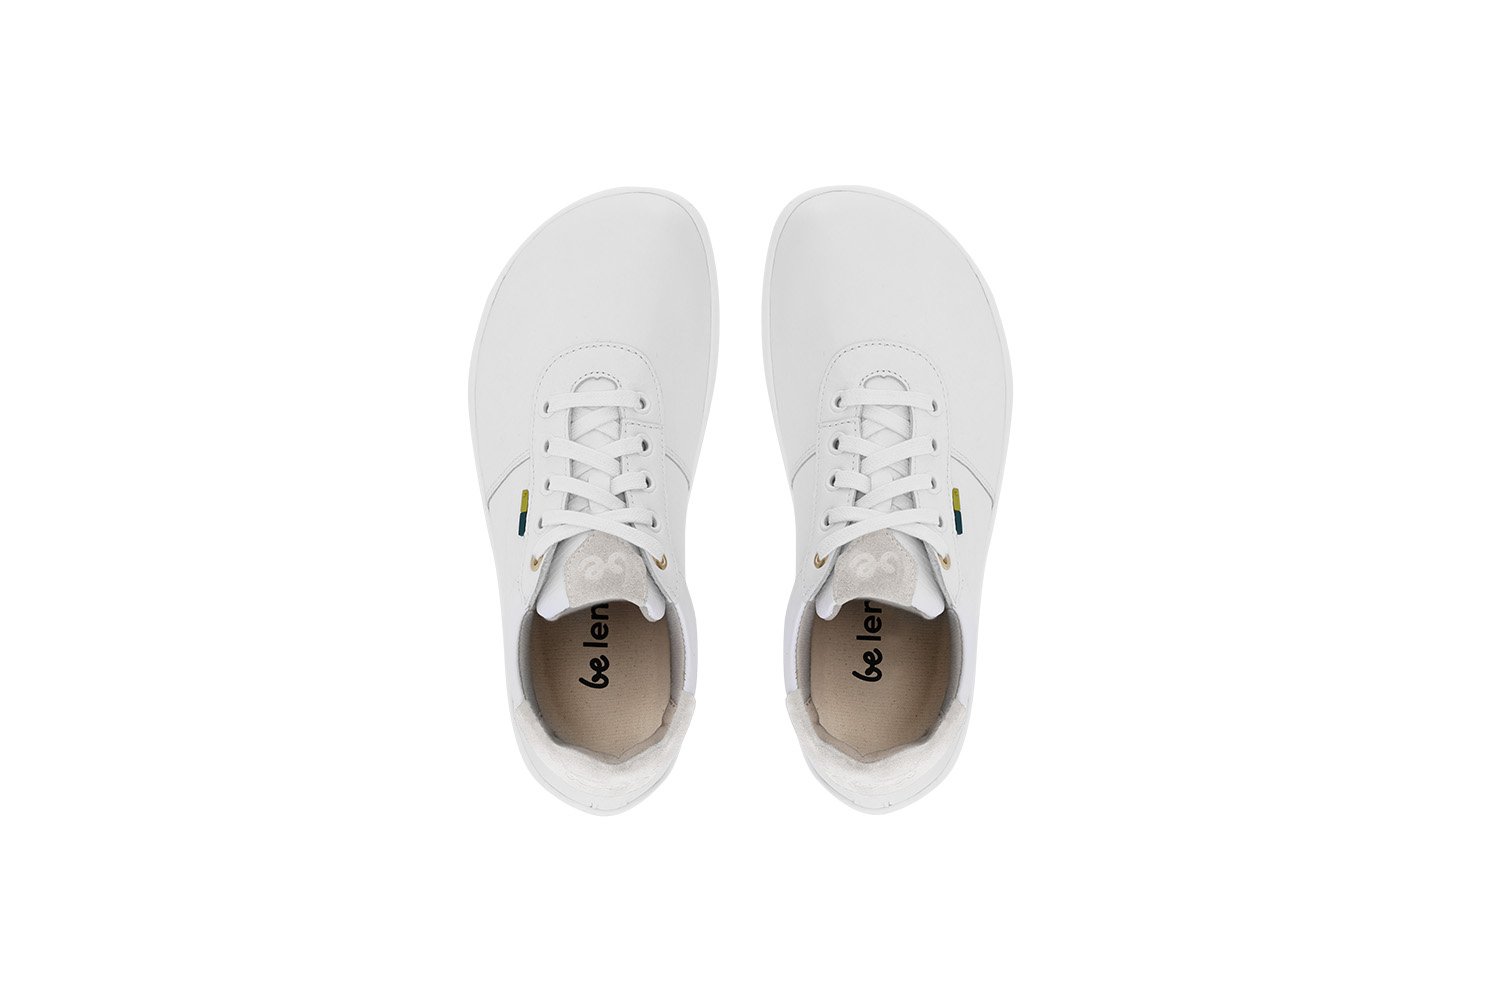 Barefoot Shoes - Be Lenka - Royale - White & Beige | Be Lenka